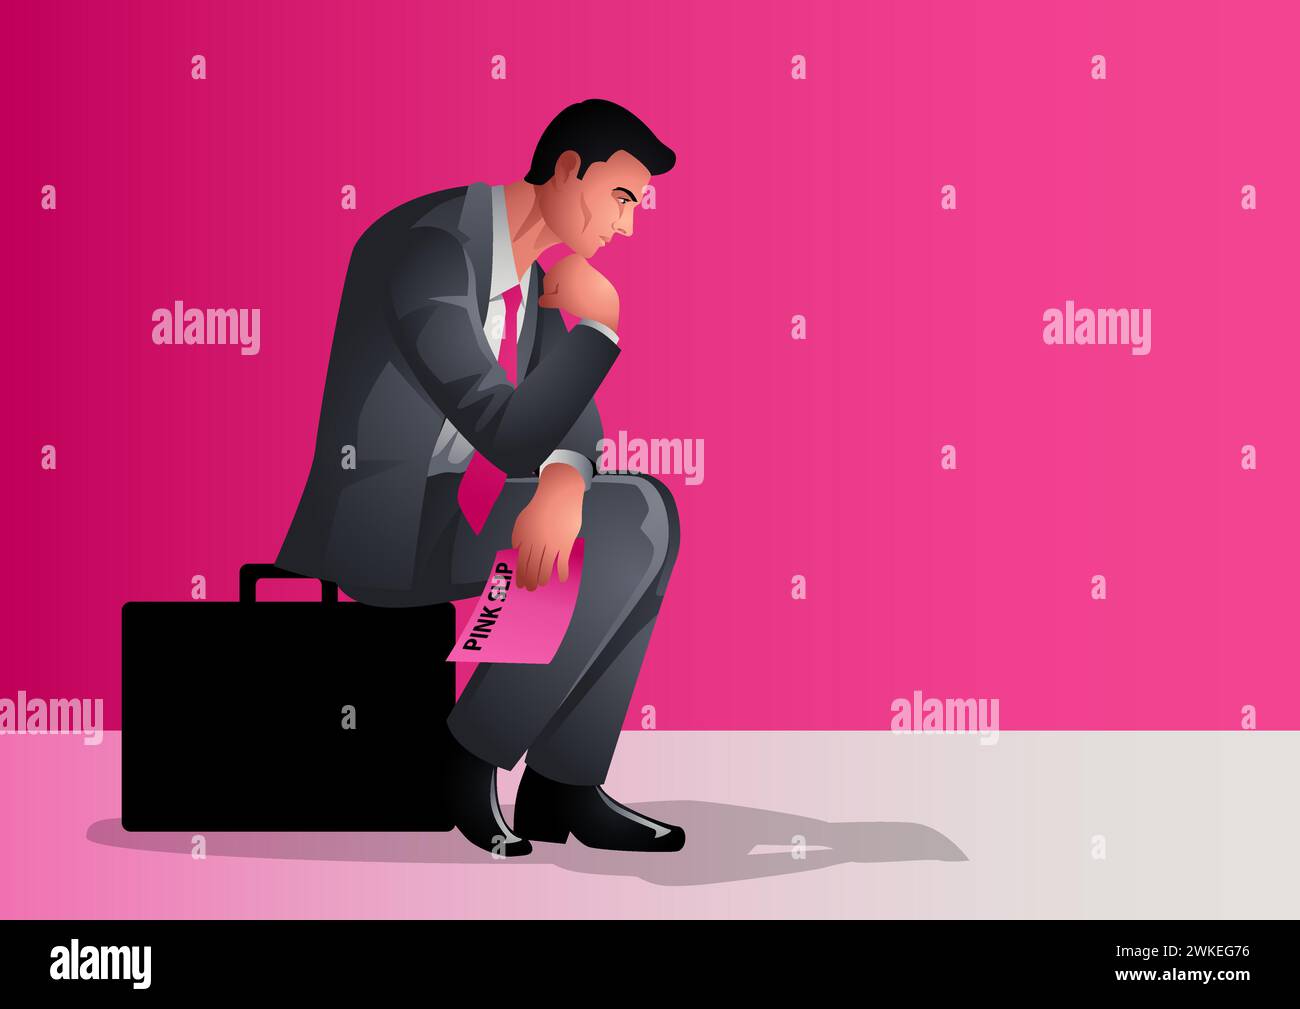 Un uomo d'affari ha perso nella profonda contemplazione. Si siede su una valigetta mentre tiene in mano una bustina rosa, simbolo di potenziale perdita di lavoro o cambiamento, emozioni di incertezza Illustrazione Vettoriale